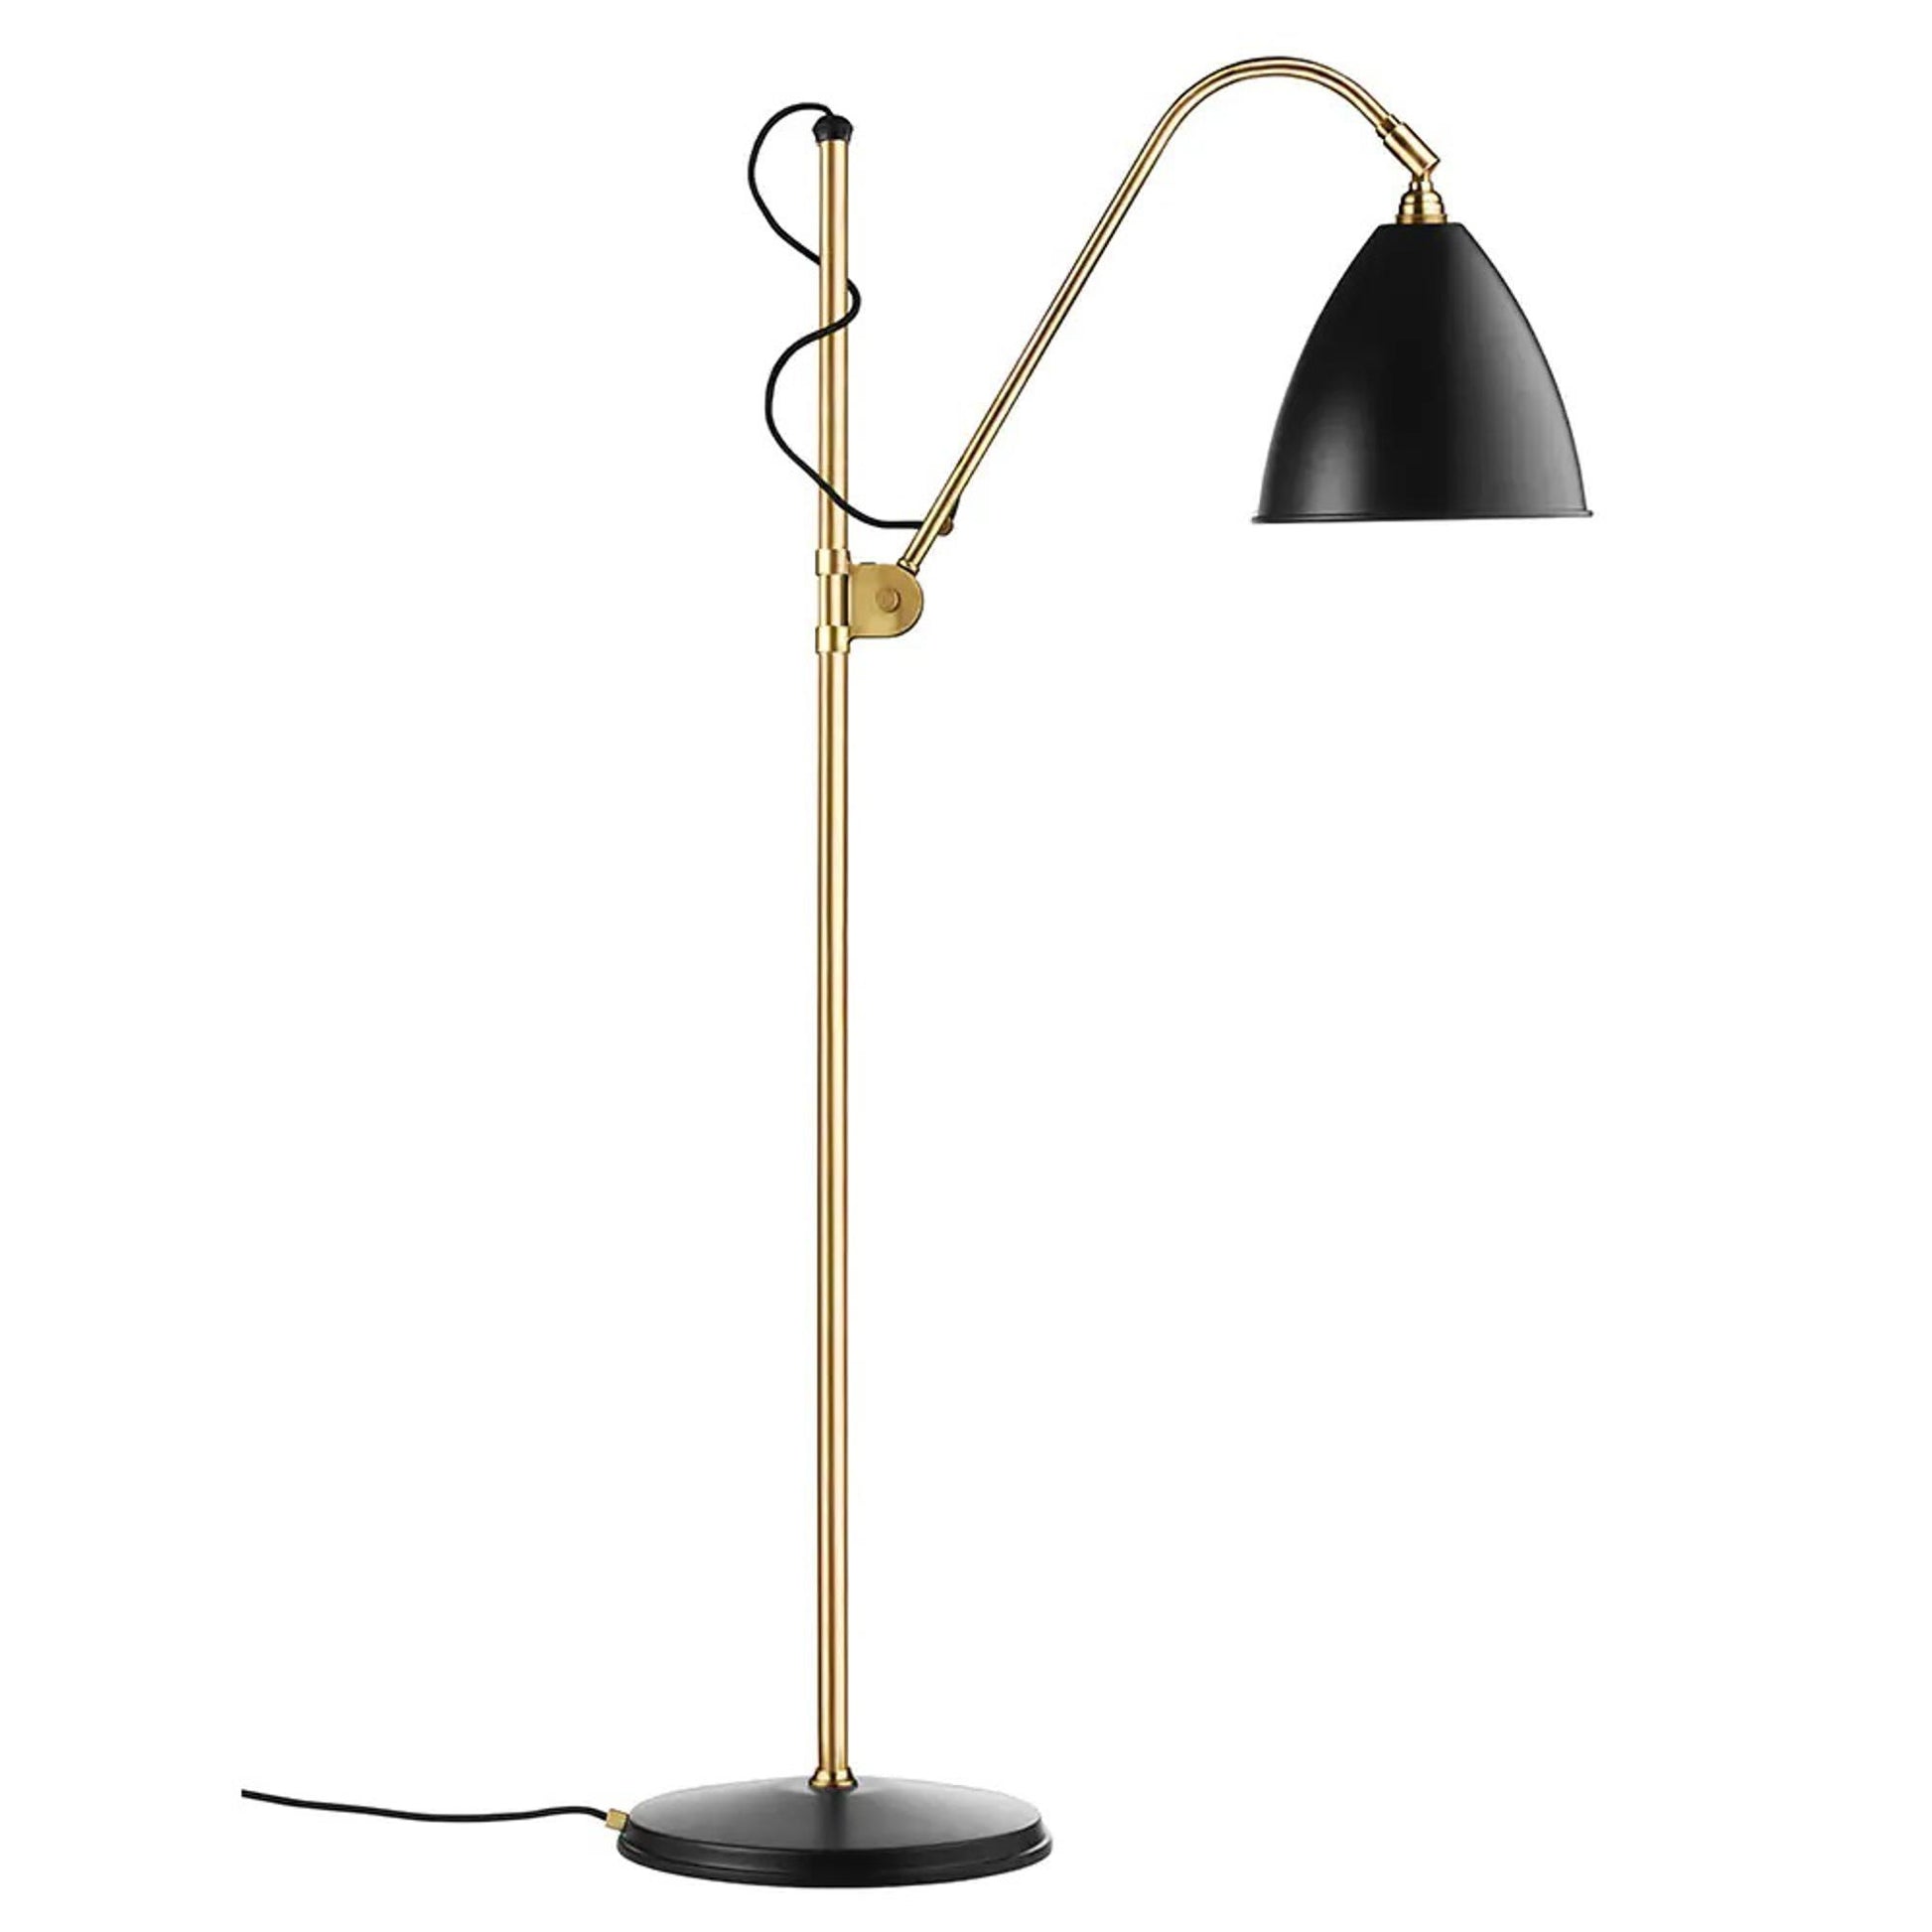 Bestlite BL3M Floor Lamp by GUBI #Brass / Black